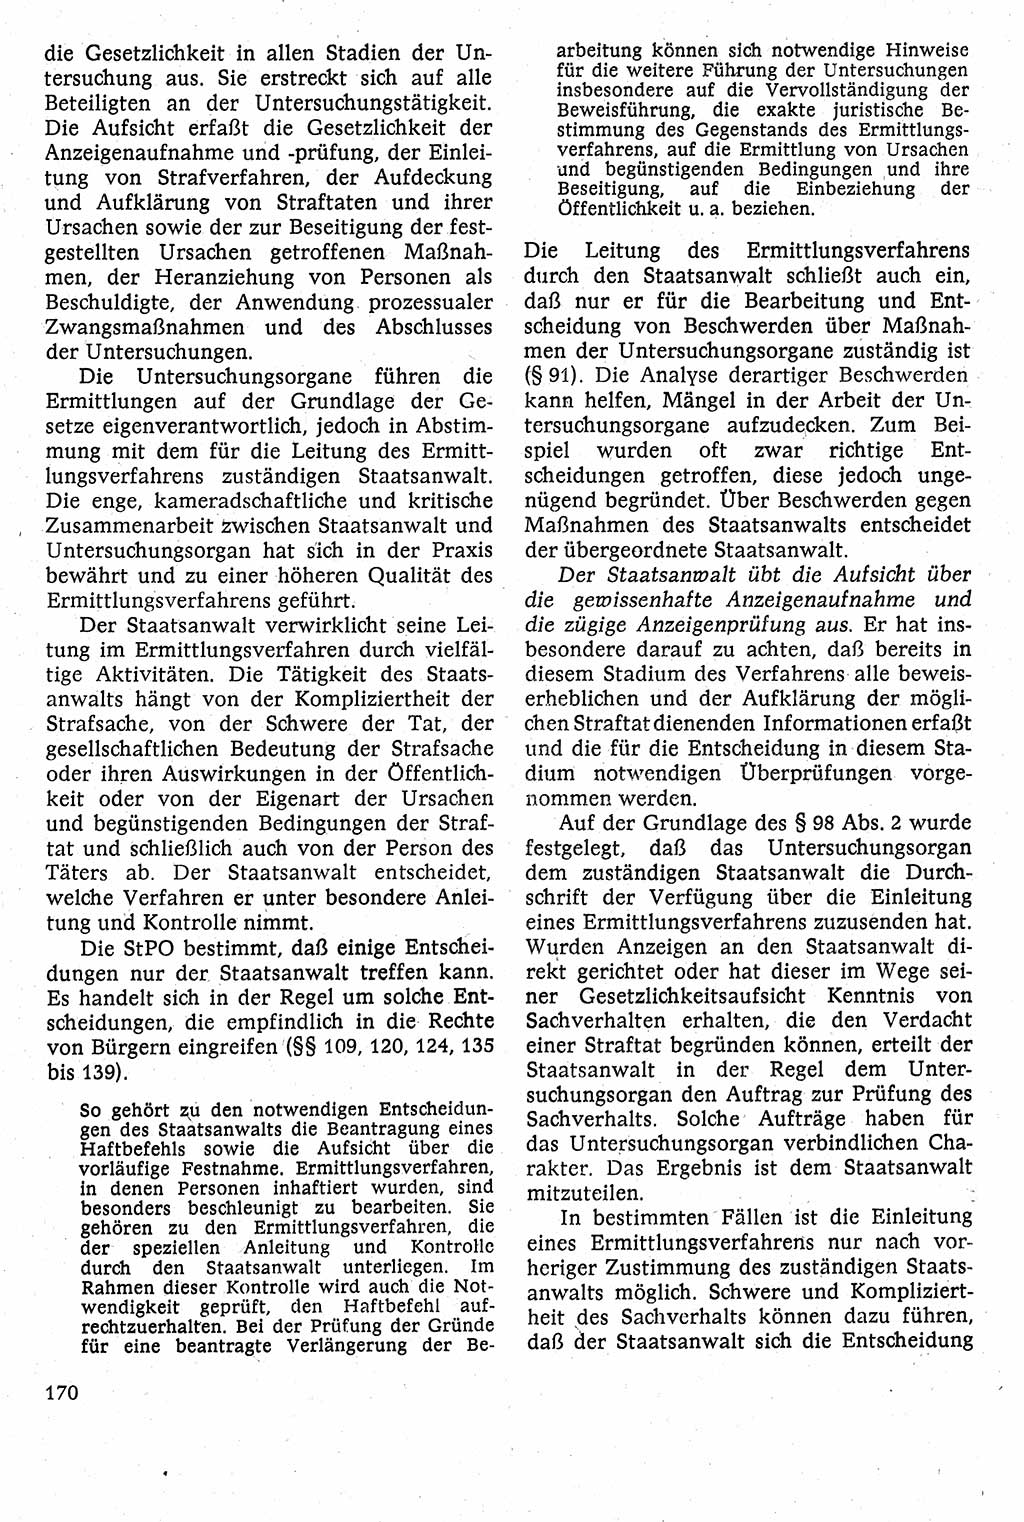 Strafverfahrensrecht [Deutsche Demokratische Republik (DDR)], Lehrbuch 1982, Seite 170 (Strafverf.-R. DDR Lb. 1982, S. 170)